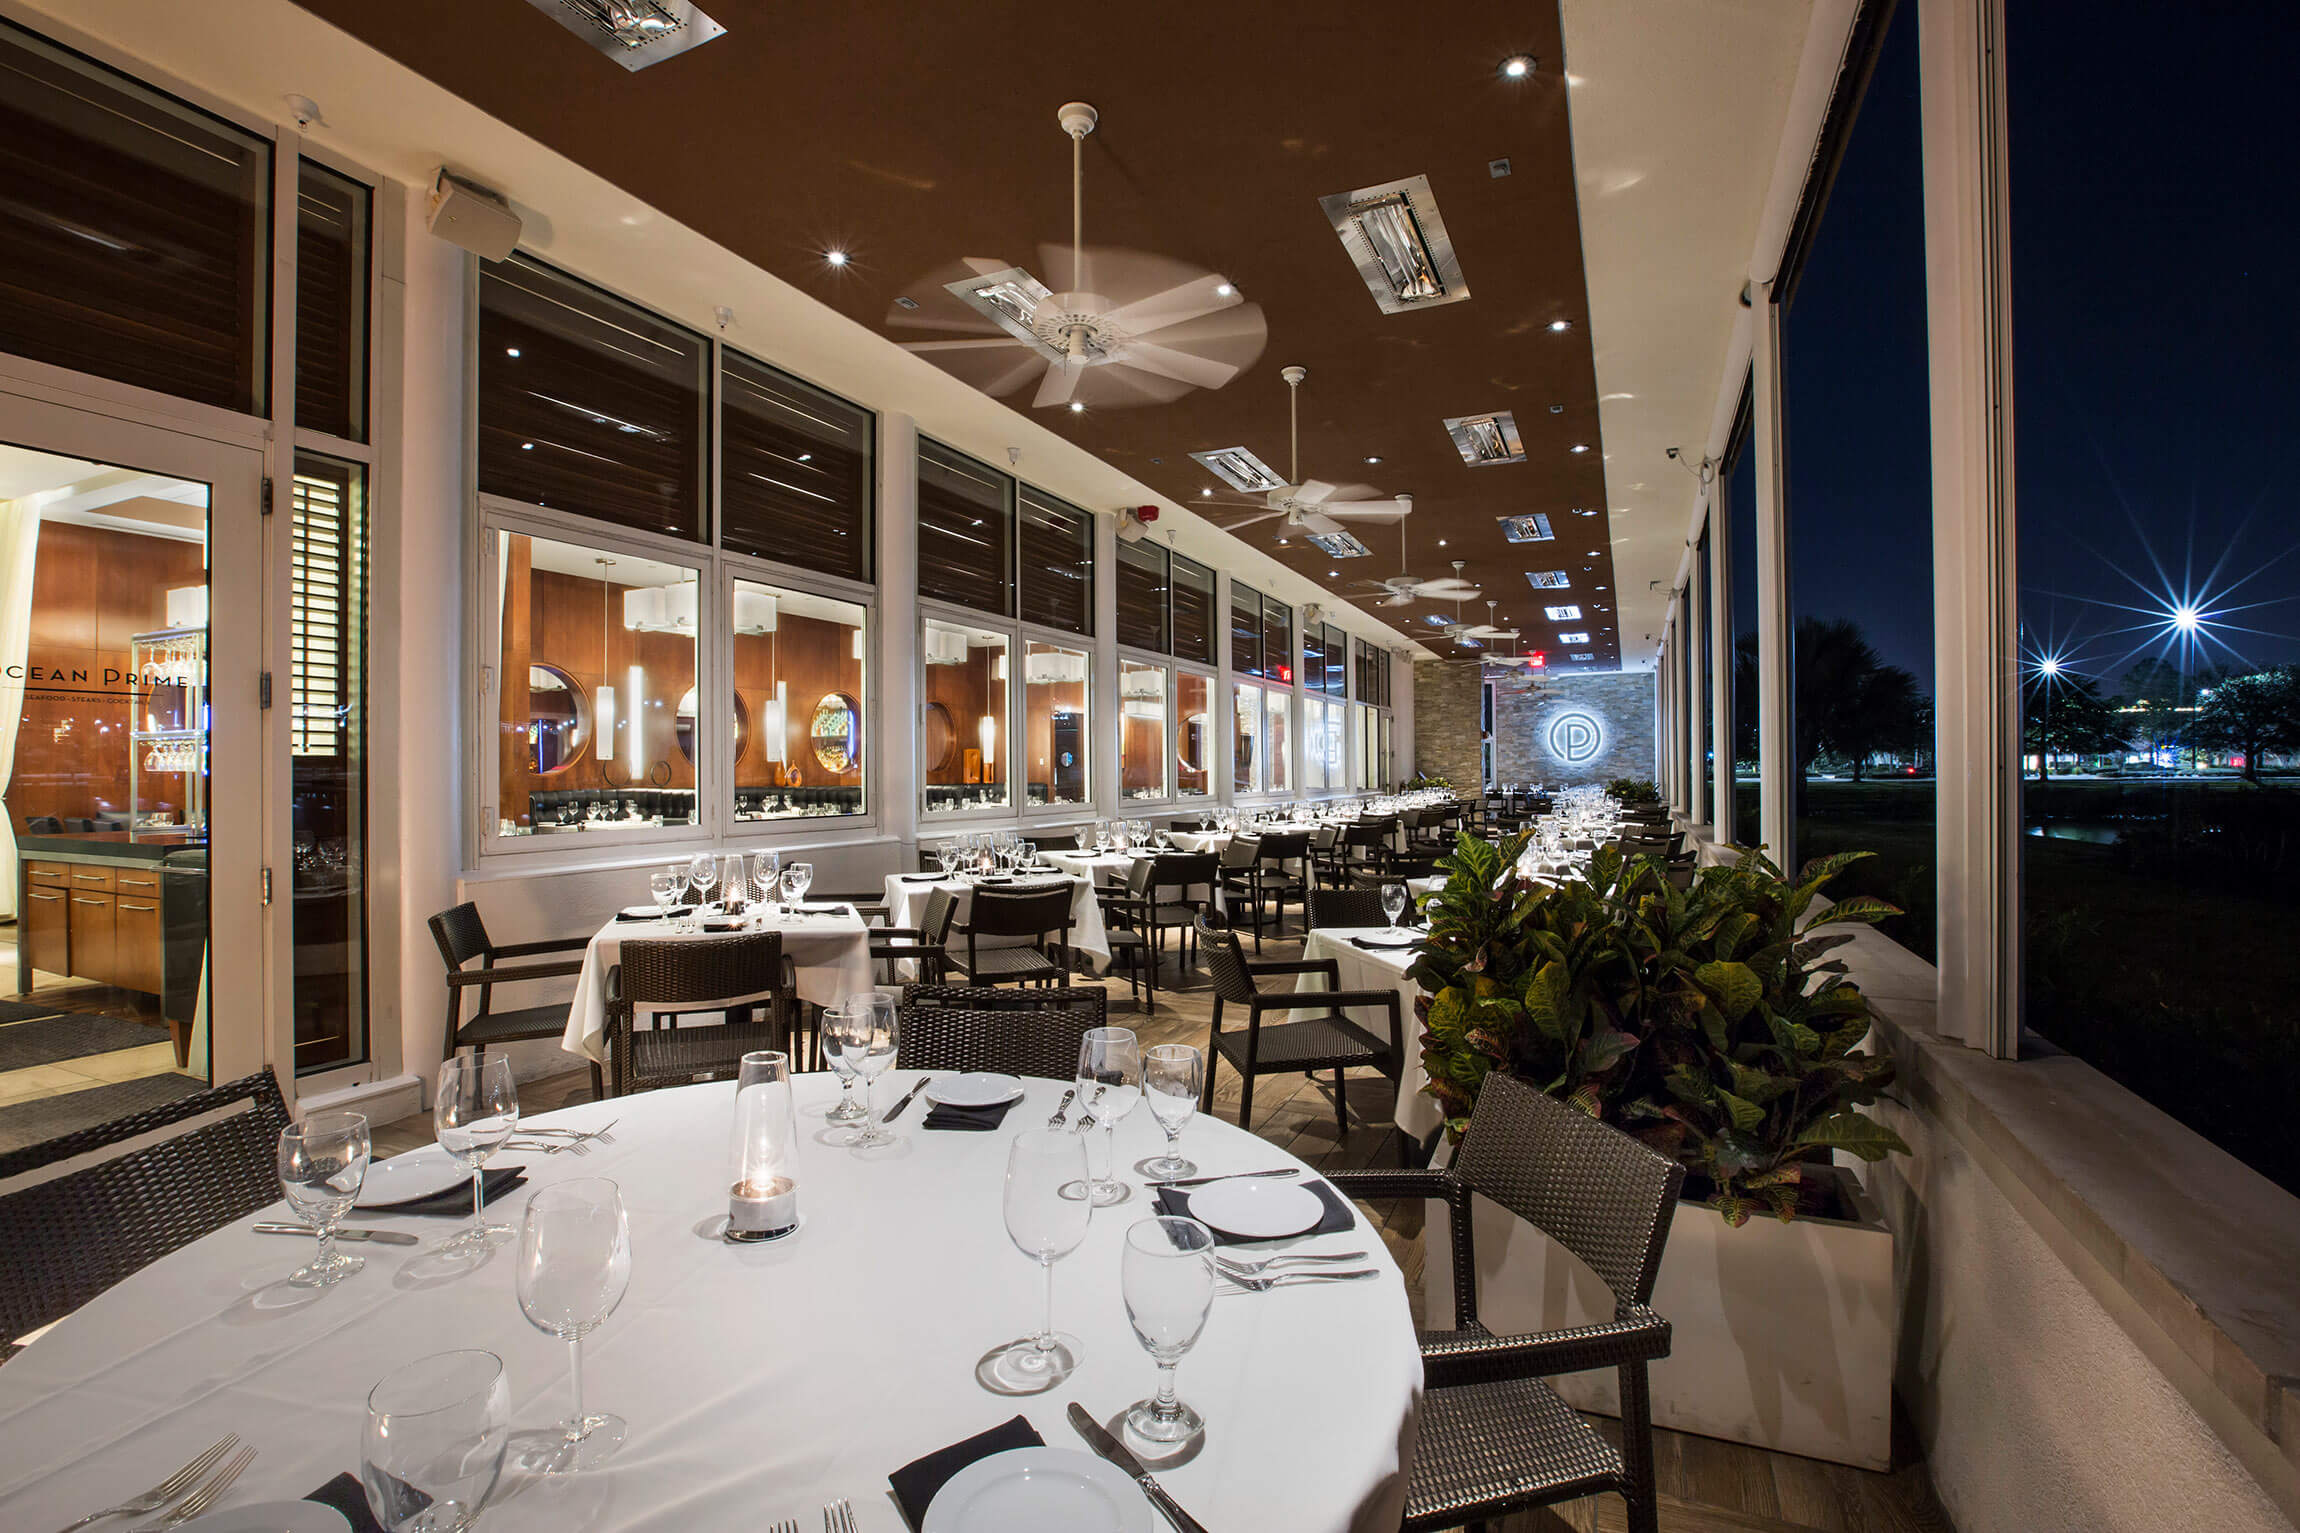 Ocean Prime Restaurant - Tampa Florida interior exterior room